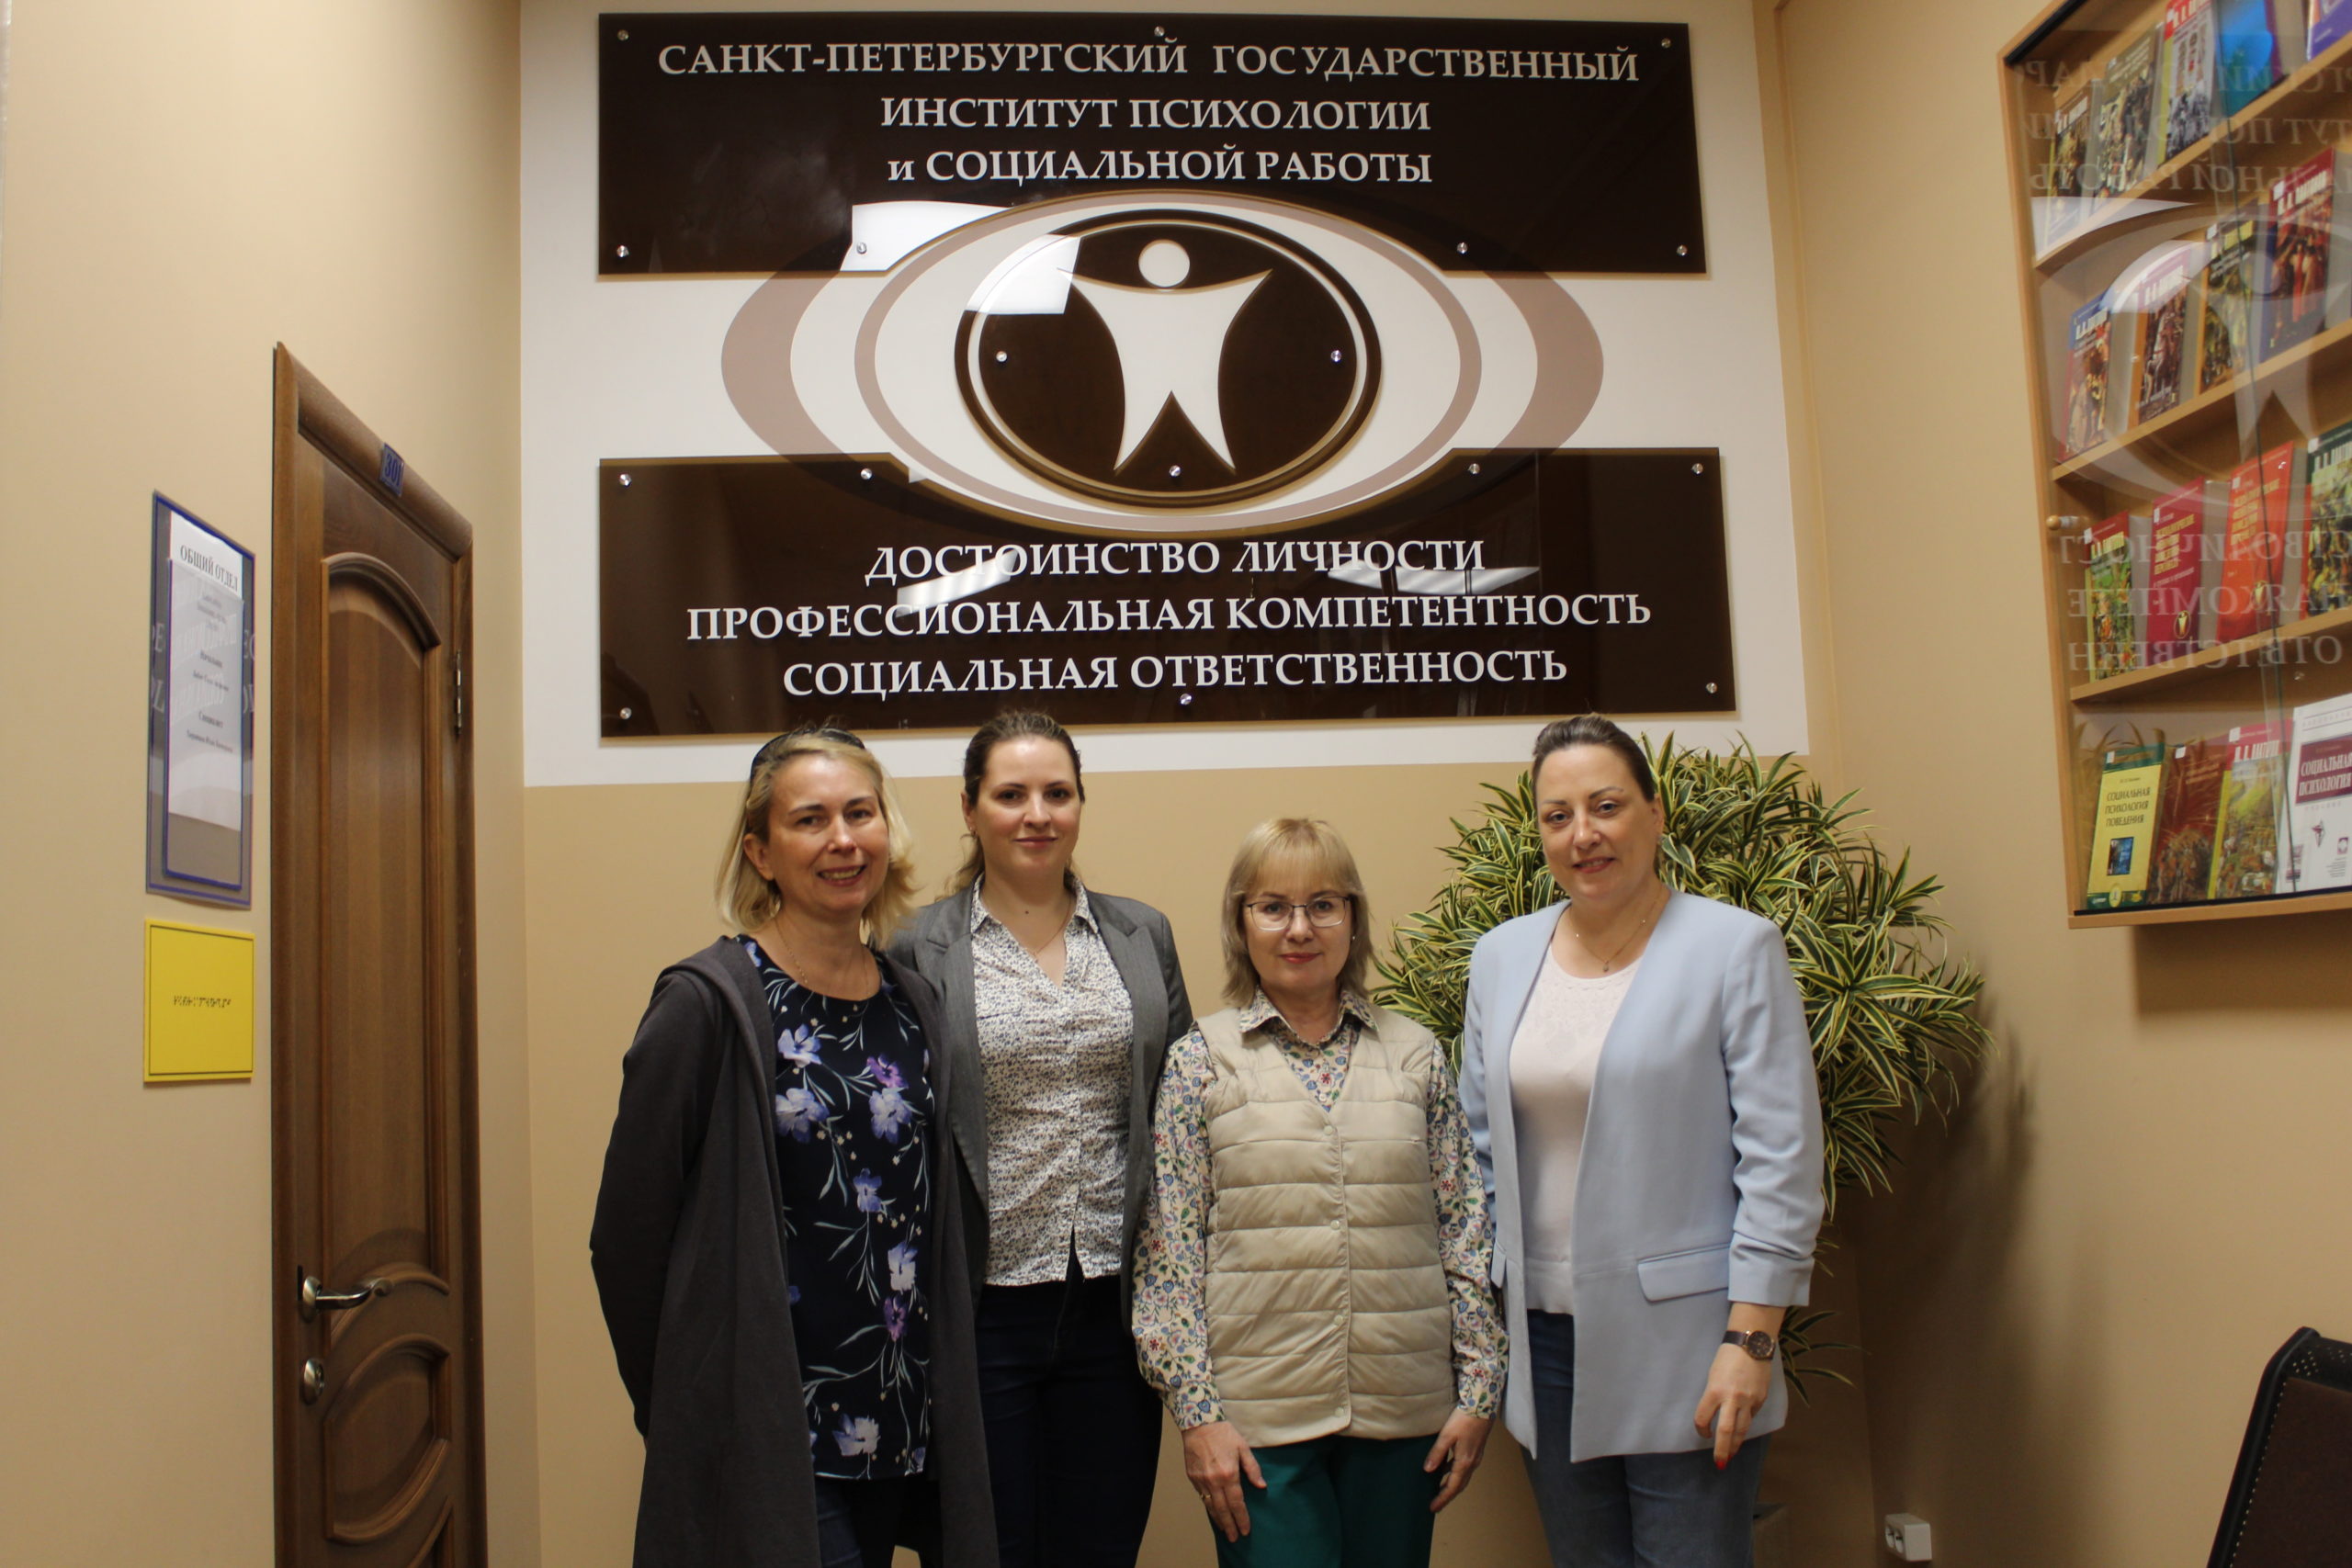 Заведующий кафедрой социальной работы Приамурского университета И.М. Воротилкина посетила Институт в рамках межвузовского взаимодействия